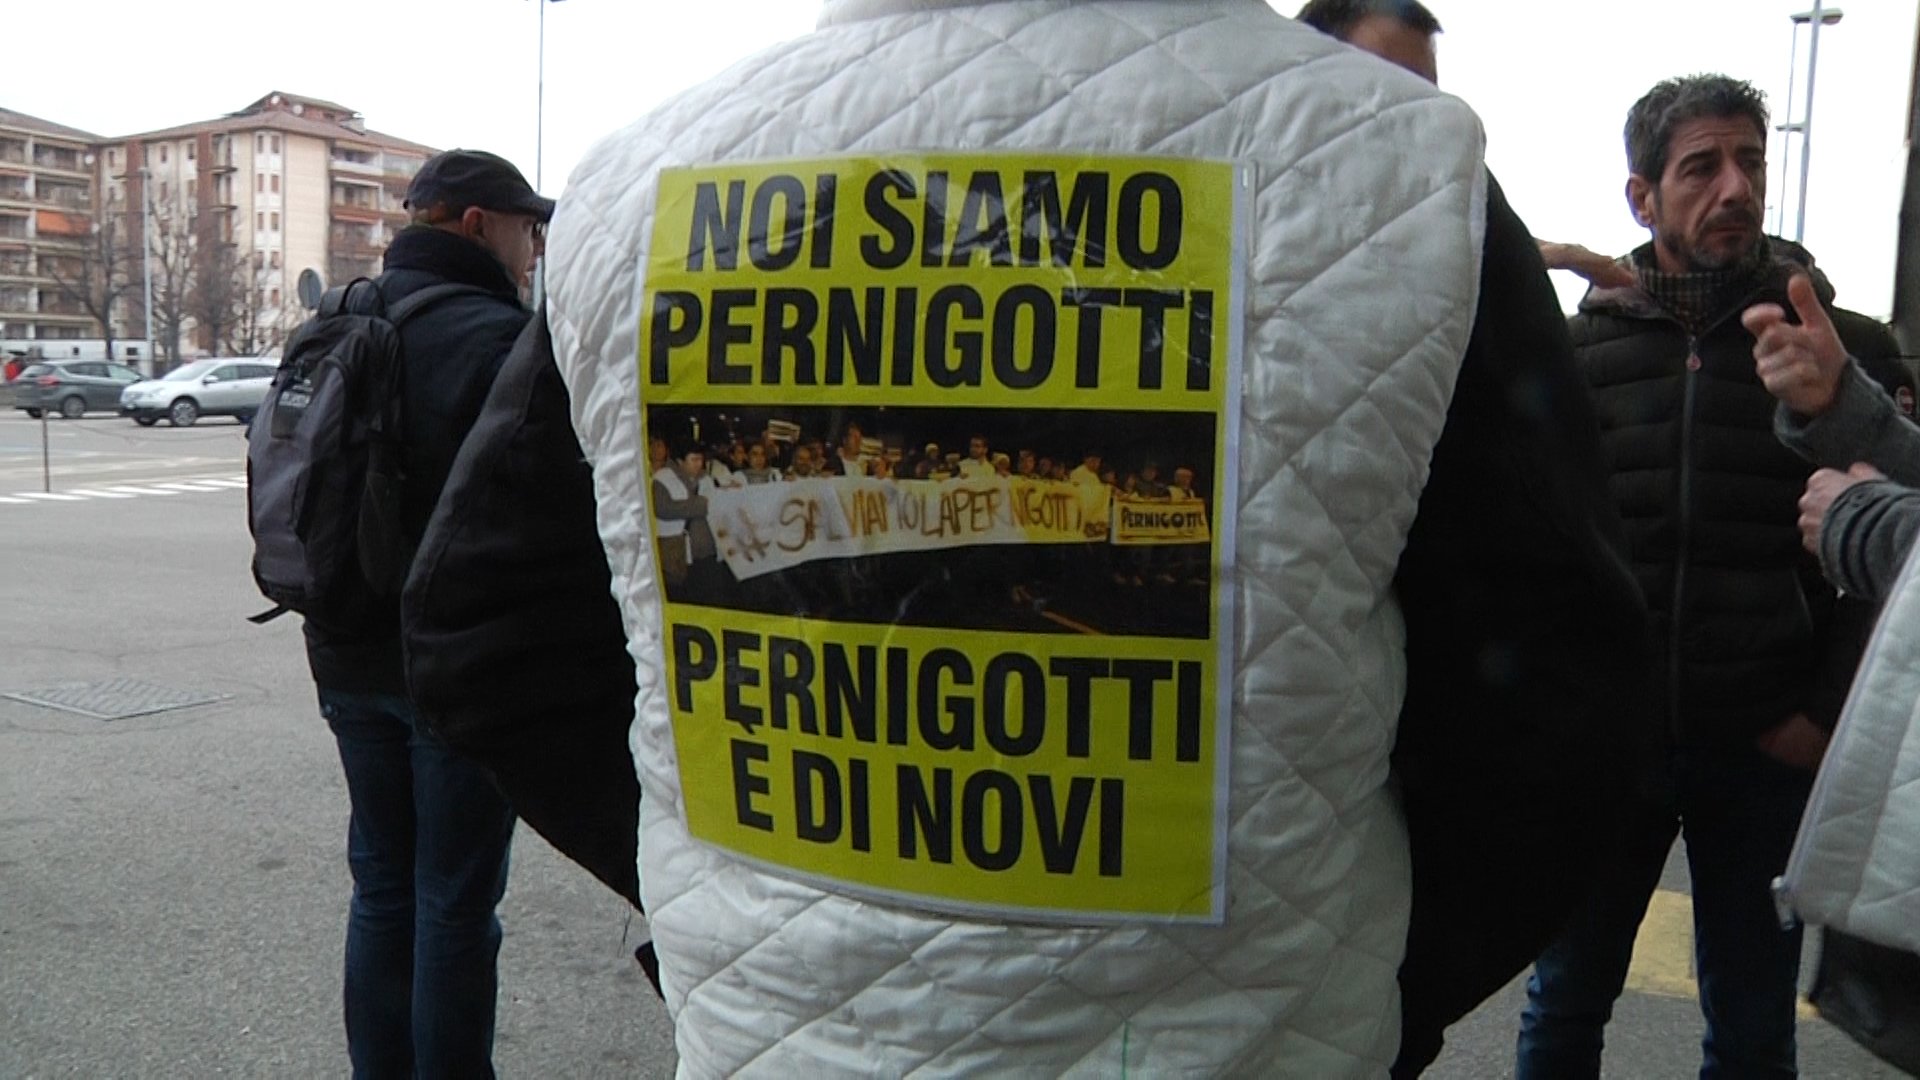 Buona Destra Piemonte pone l’accento sulla crisi Pernigotti: “Stabilimento da salvare”